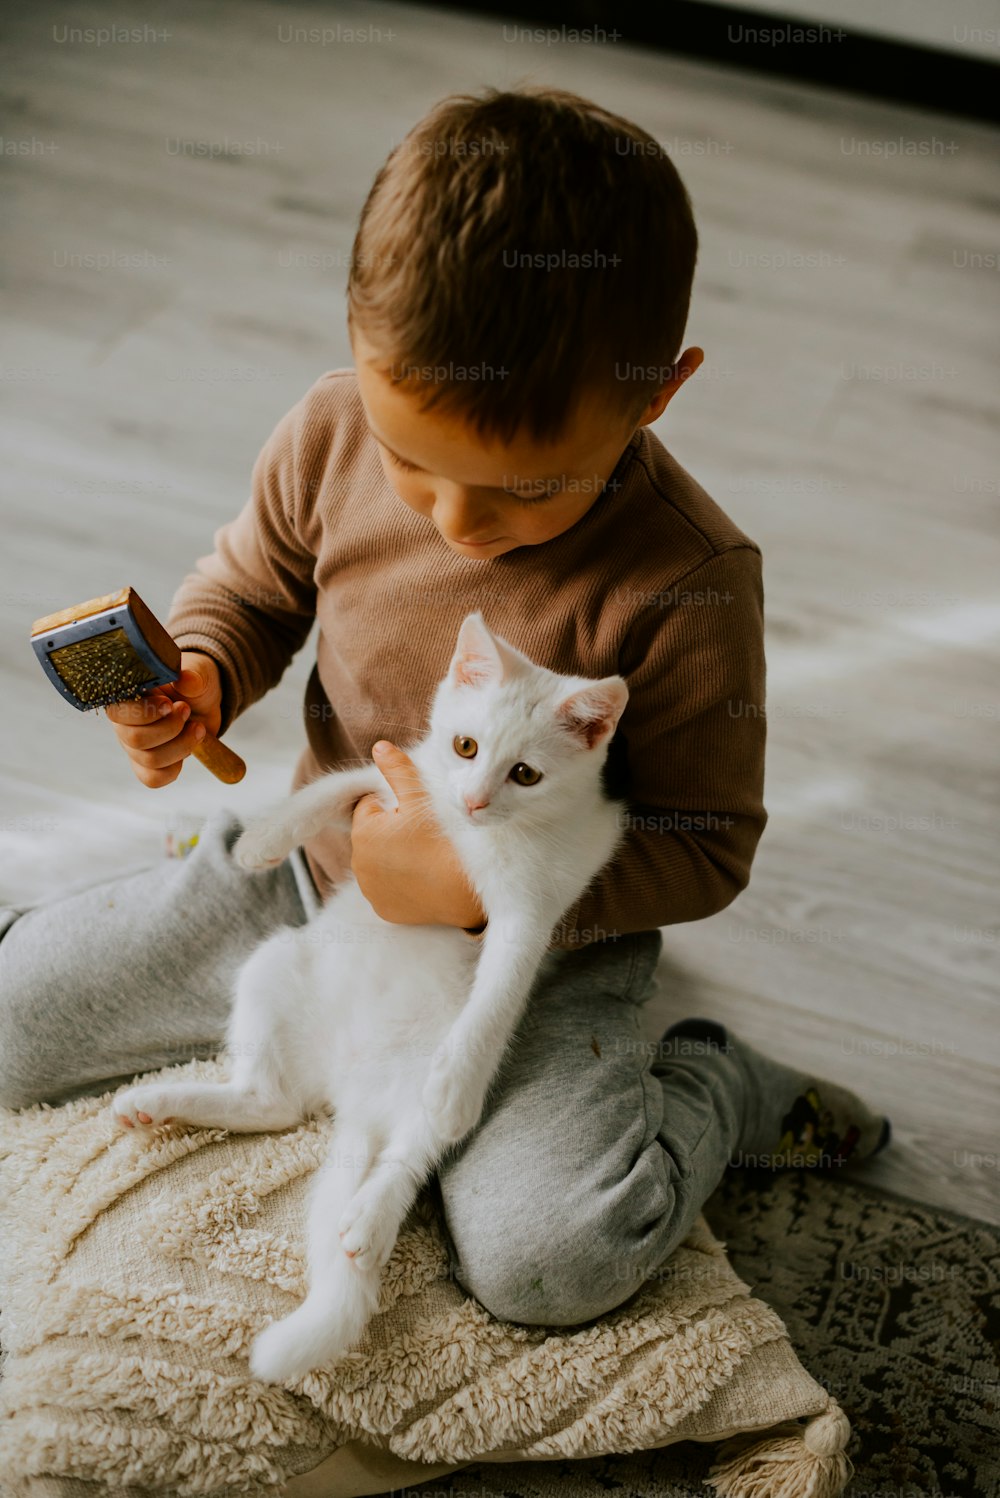 Ein kleiner Junge, der eine weiße Katze hält, während er auf dem Boden sitzt